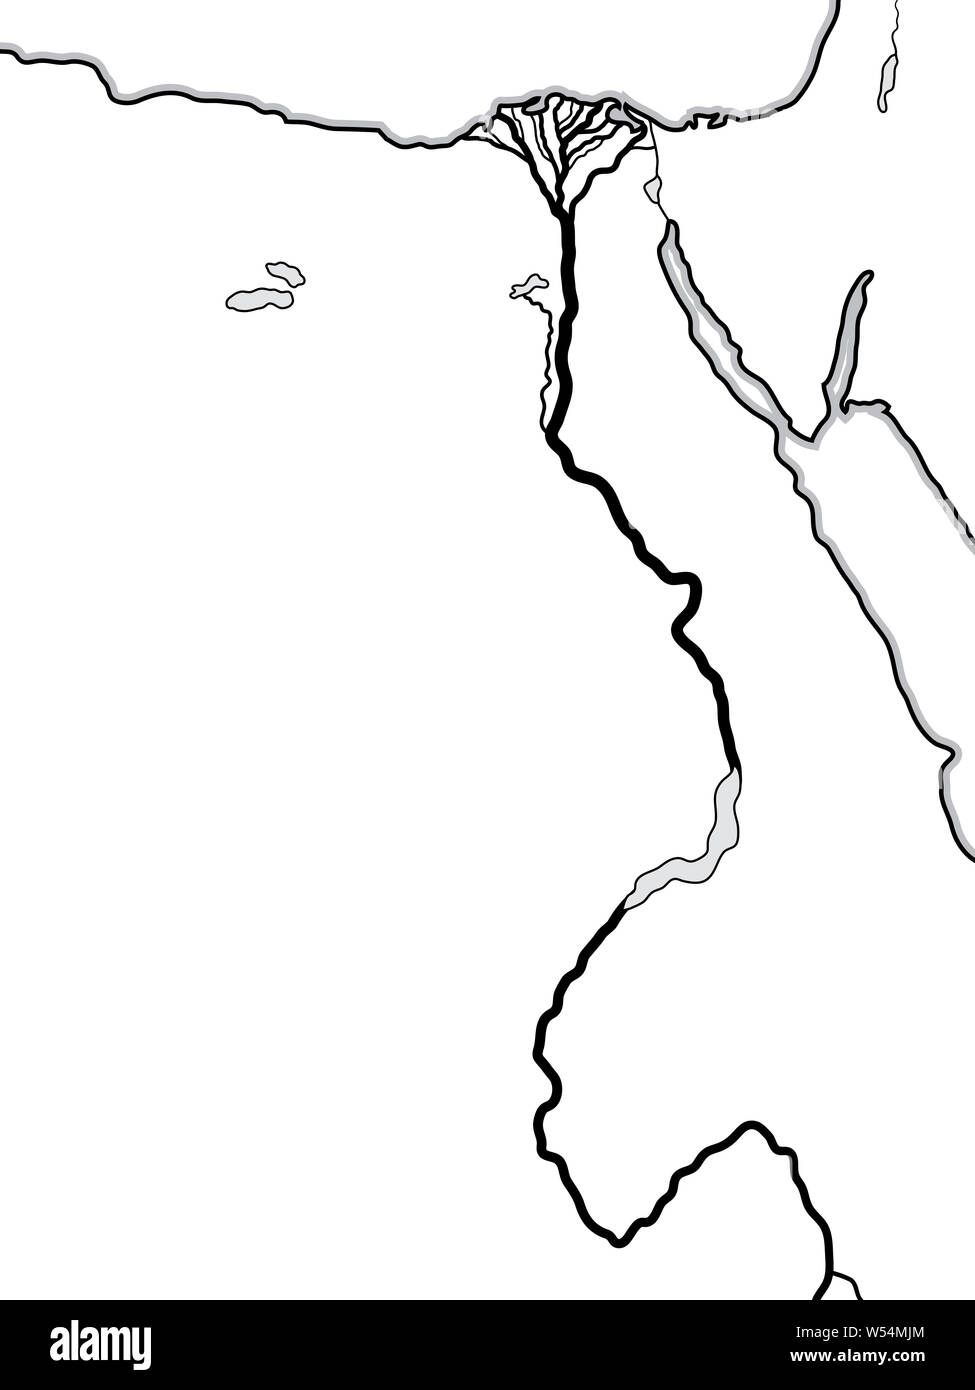 Welt Karte von Ägypten und Libyen: Nordafrika, Ägypten und Oberägypten, den Nil und sein Delta. Geographische Chart mit Küste & fruchtbaren Fluss. Stockfoto